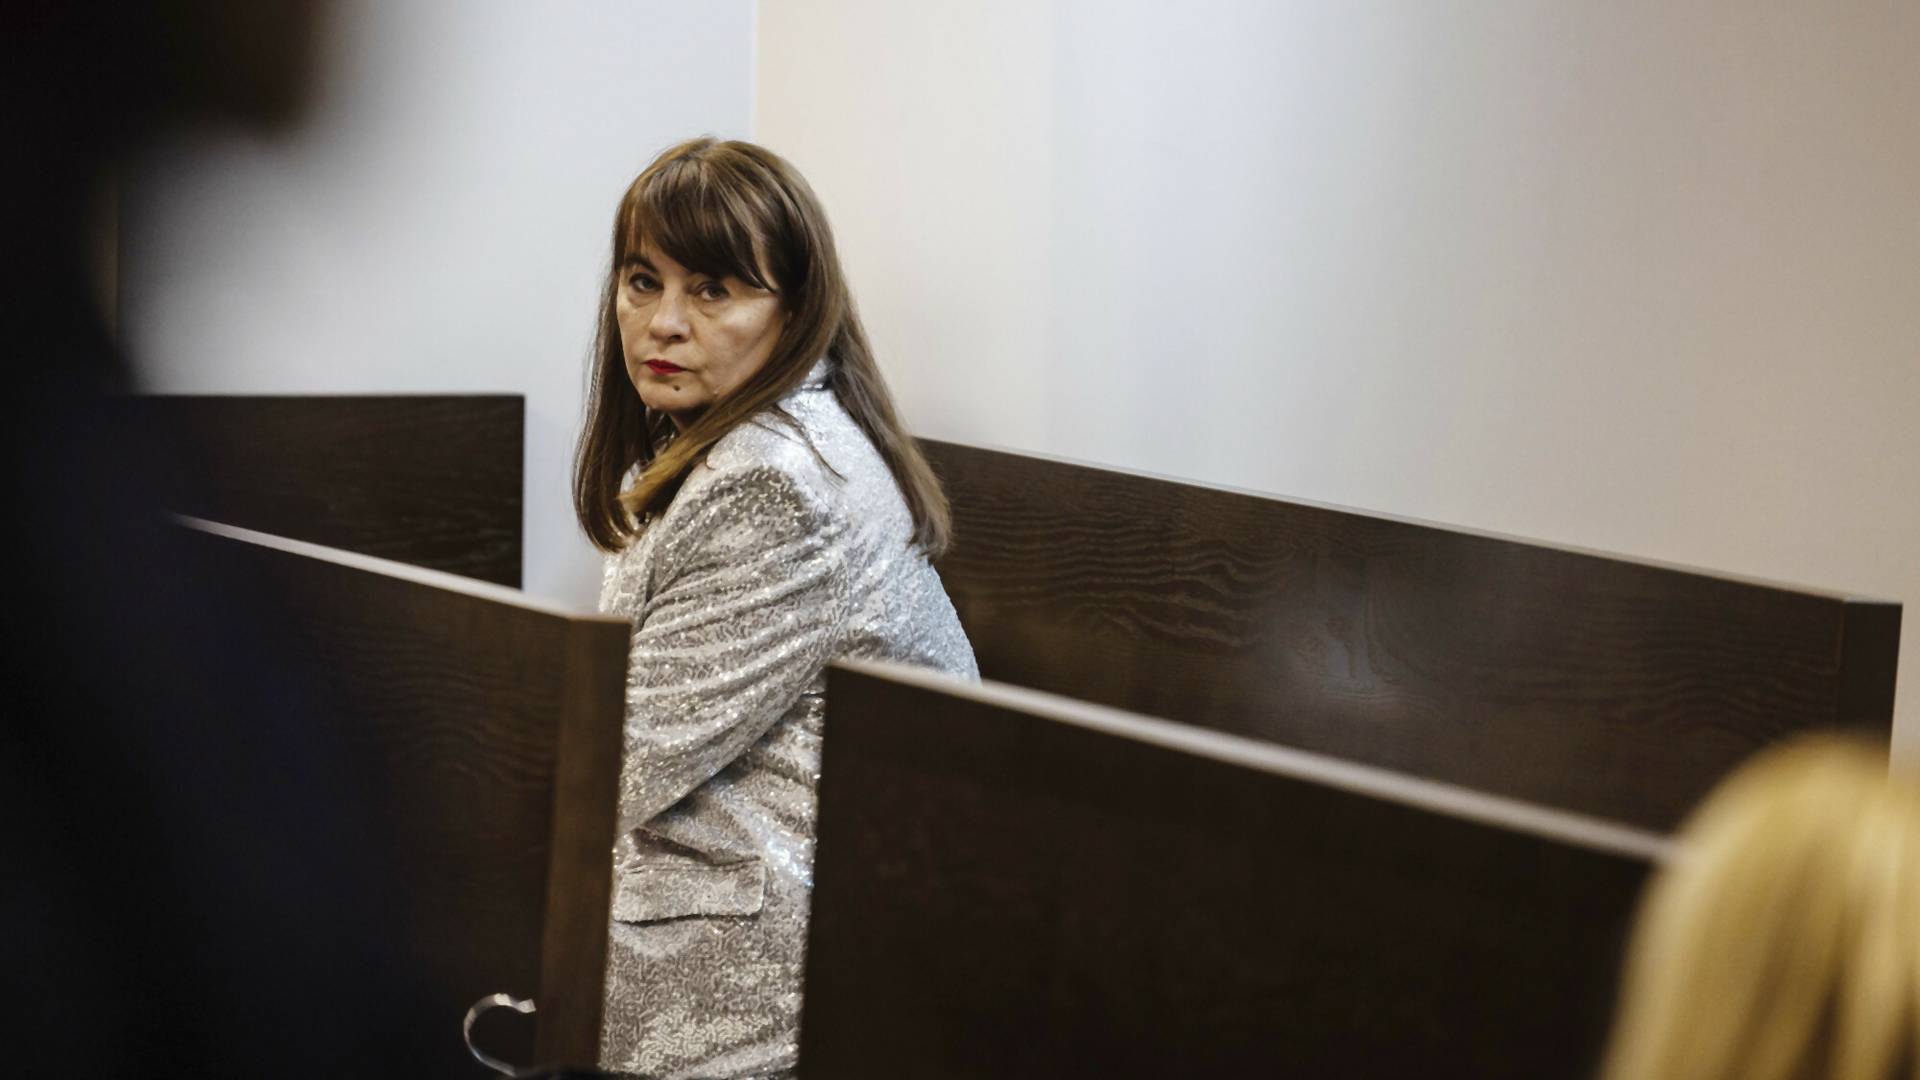 "Nie musimy i nie powinnyśmy się bać". Adwokatka komentuje wyrok w sprawie Justyny Wydrzyńskiej